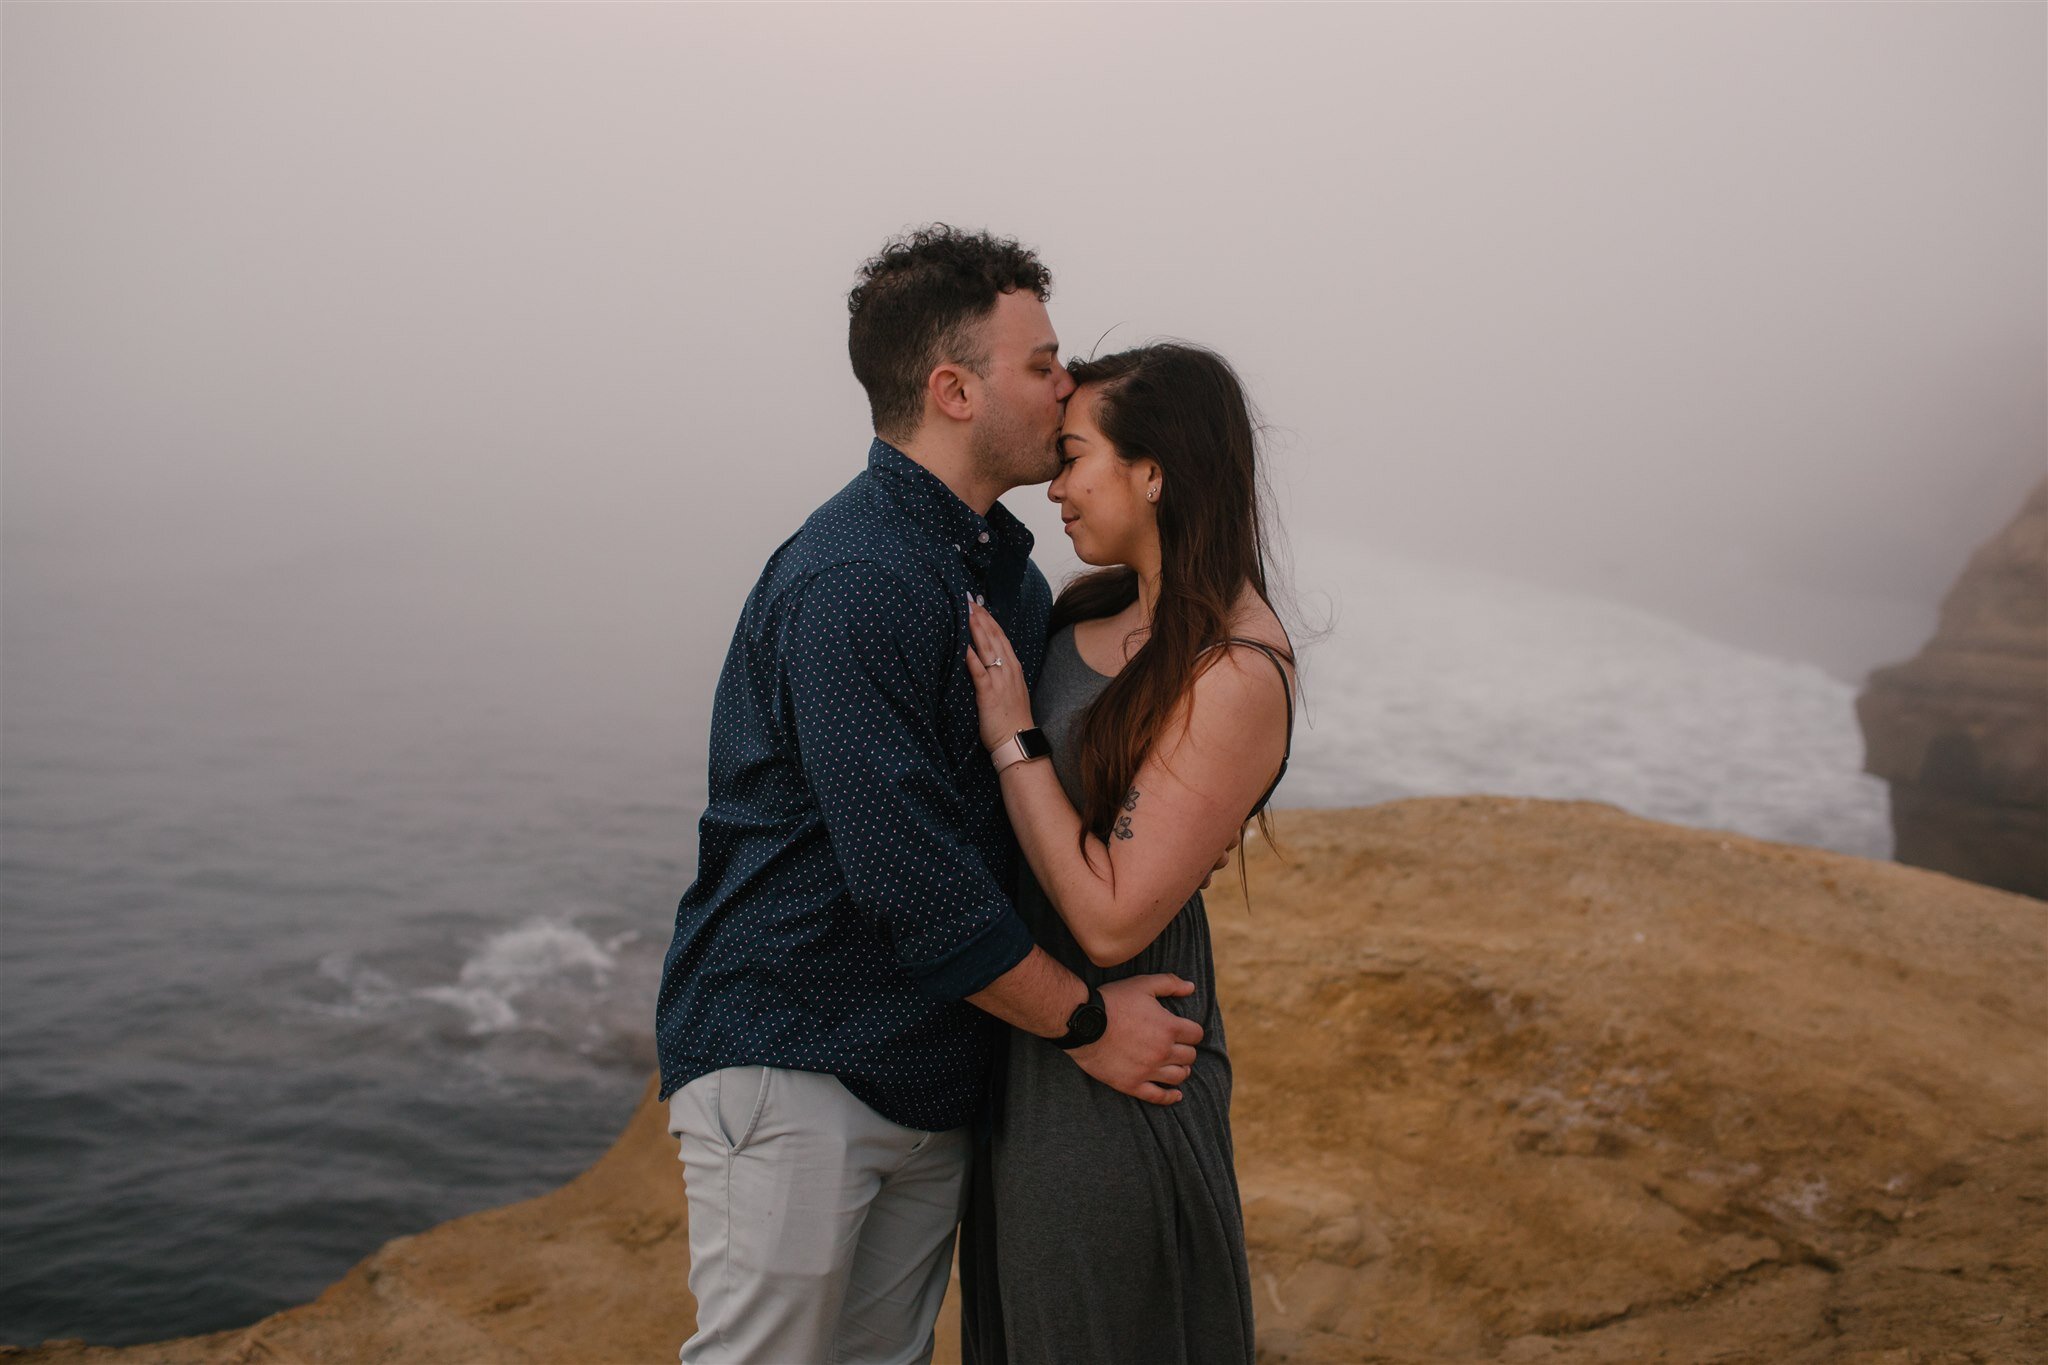 sunset-cliffs-san-diego-surprise-proposal-engagement-socal-southern-california-wedding-elopement-photographer-beach-ocean-12.jpg